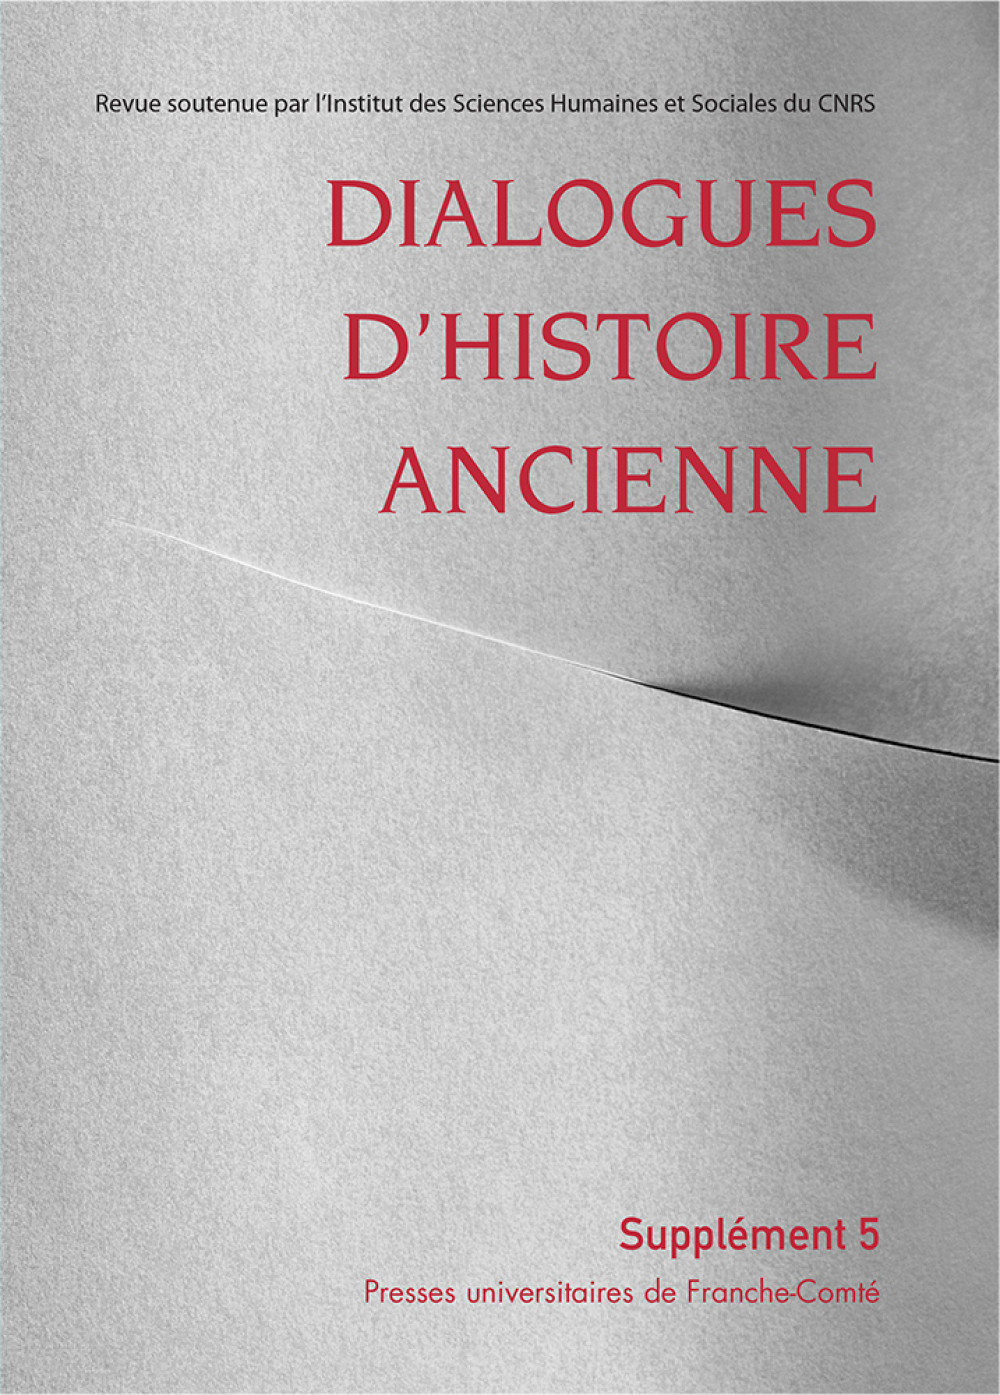 Dialogues d'Histoire Ancienne supplément 5